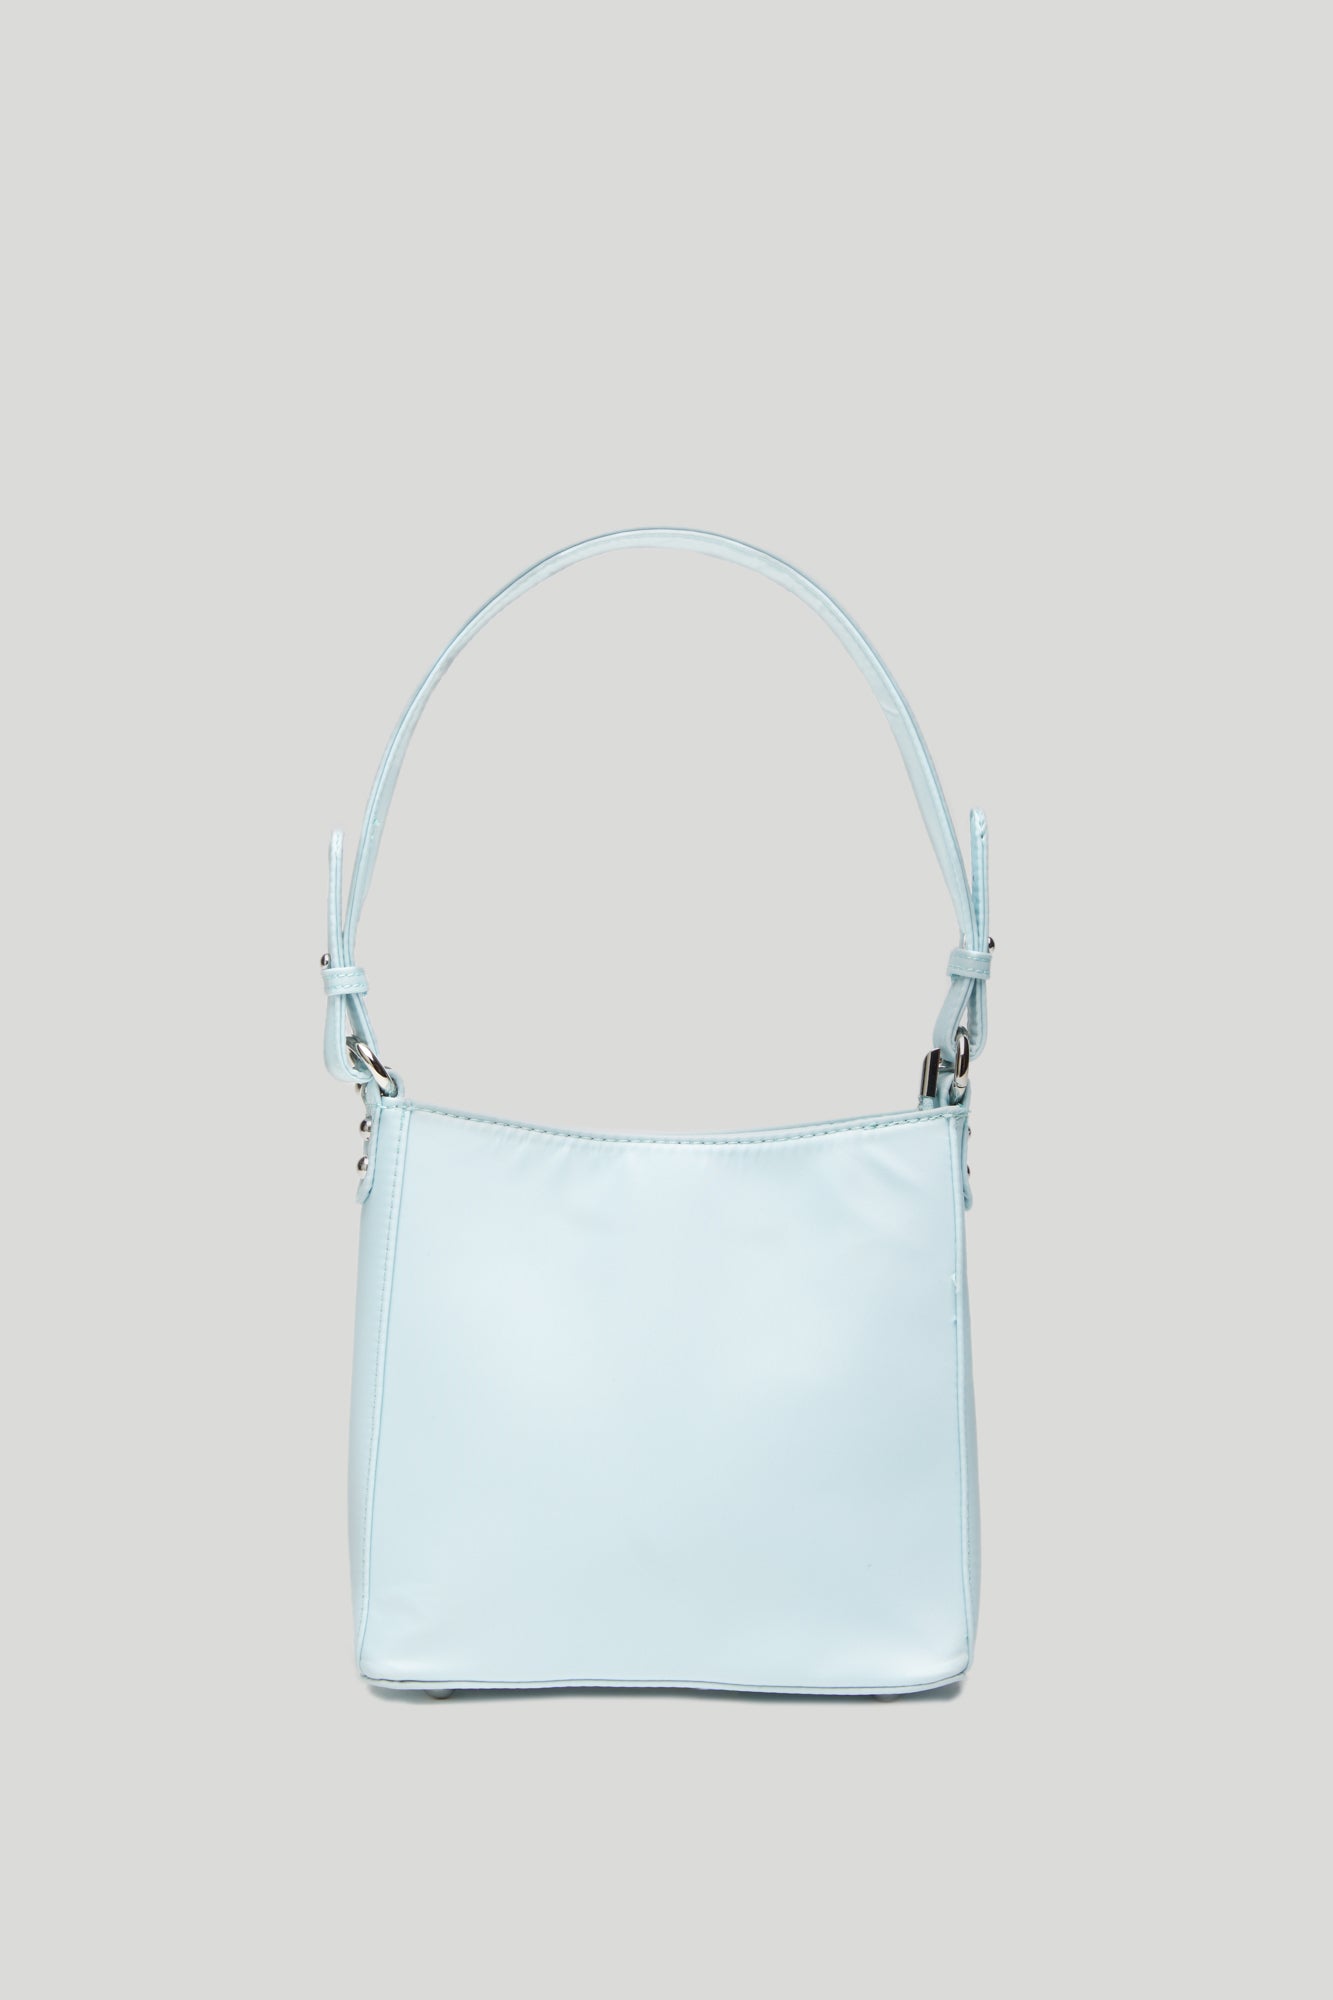 HVISK Amble Bag in Light Blue Recycled Nylon